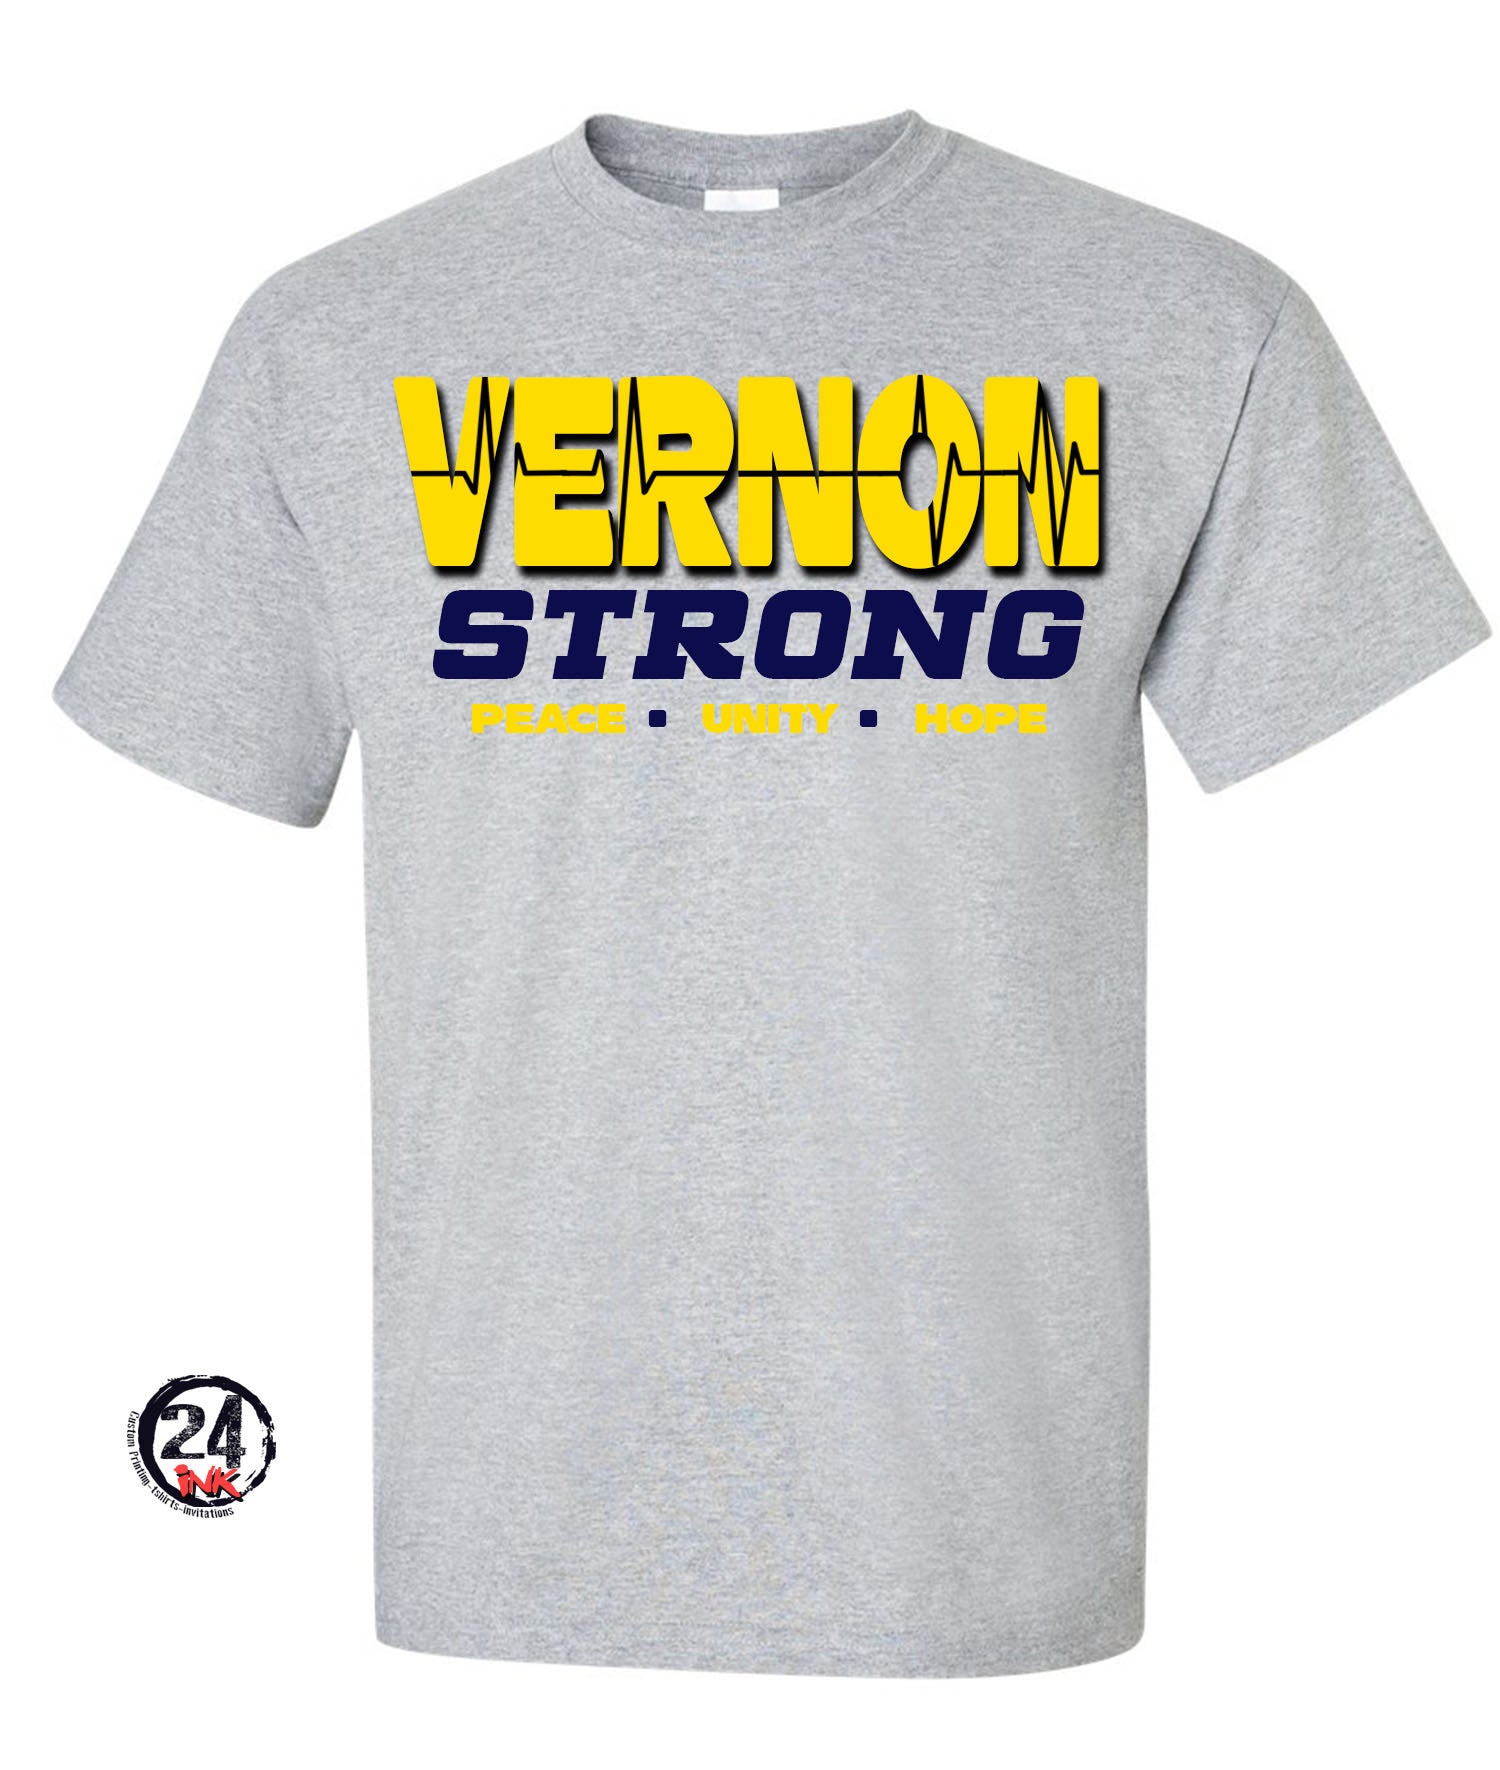 Vernon Strong Shirt